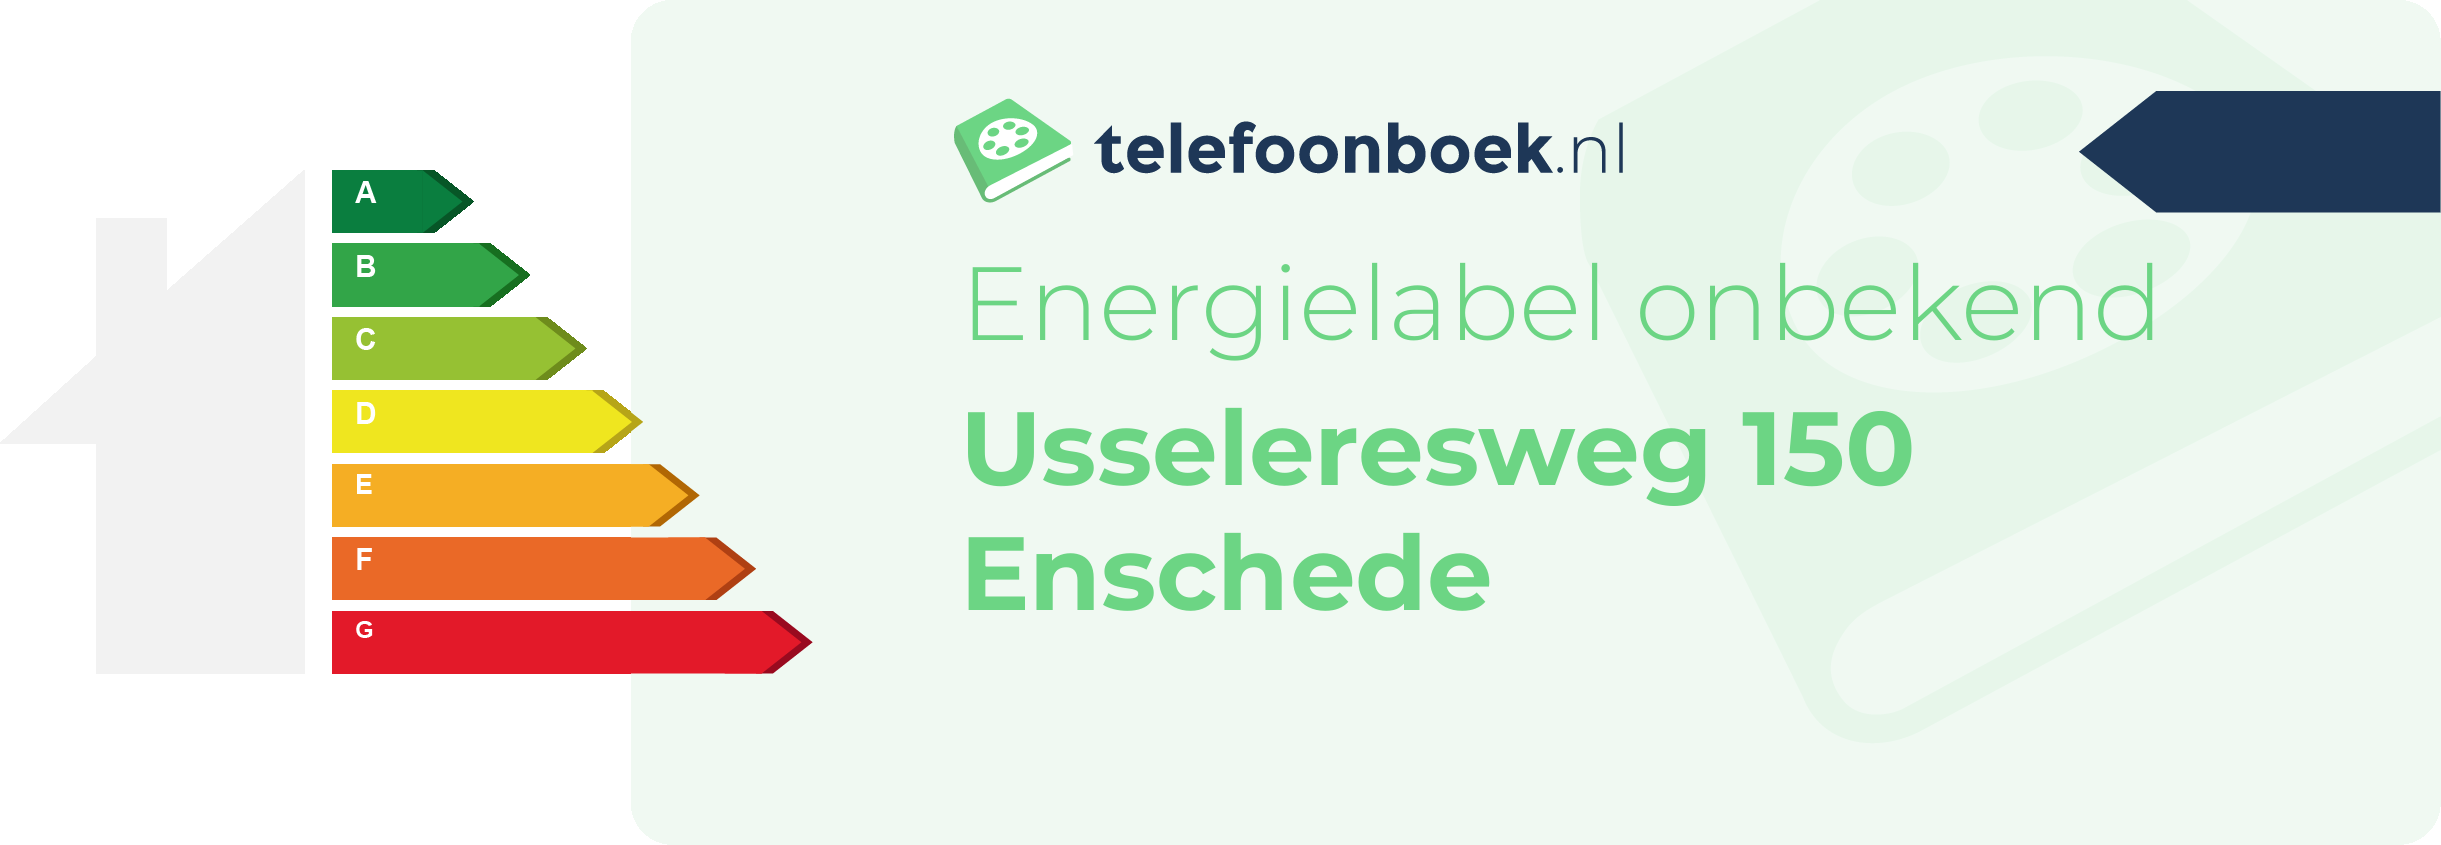 Energielabel Usseleresweg 150 Enschede